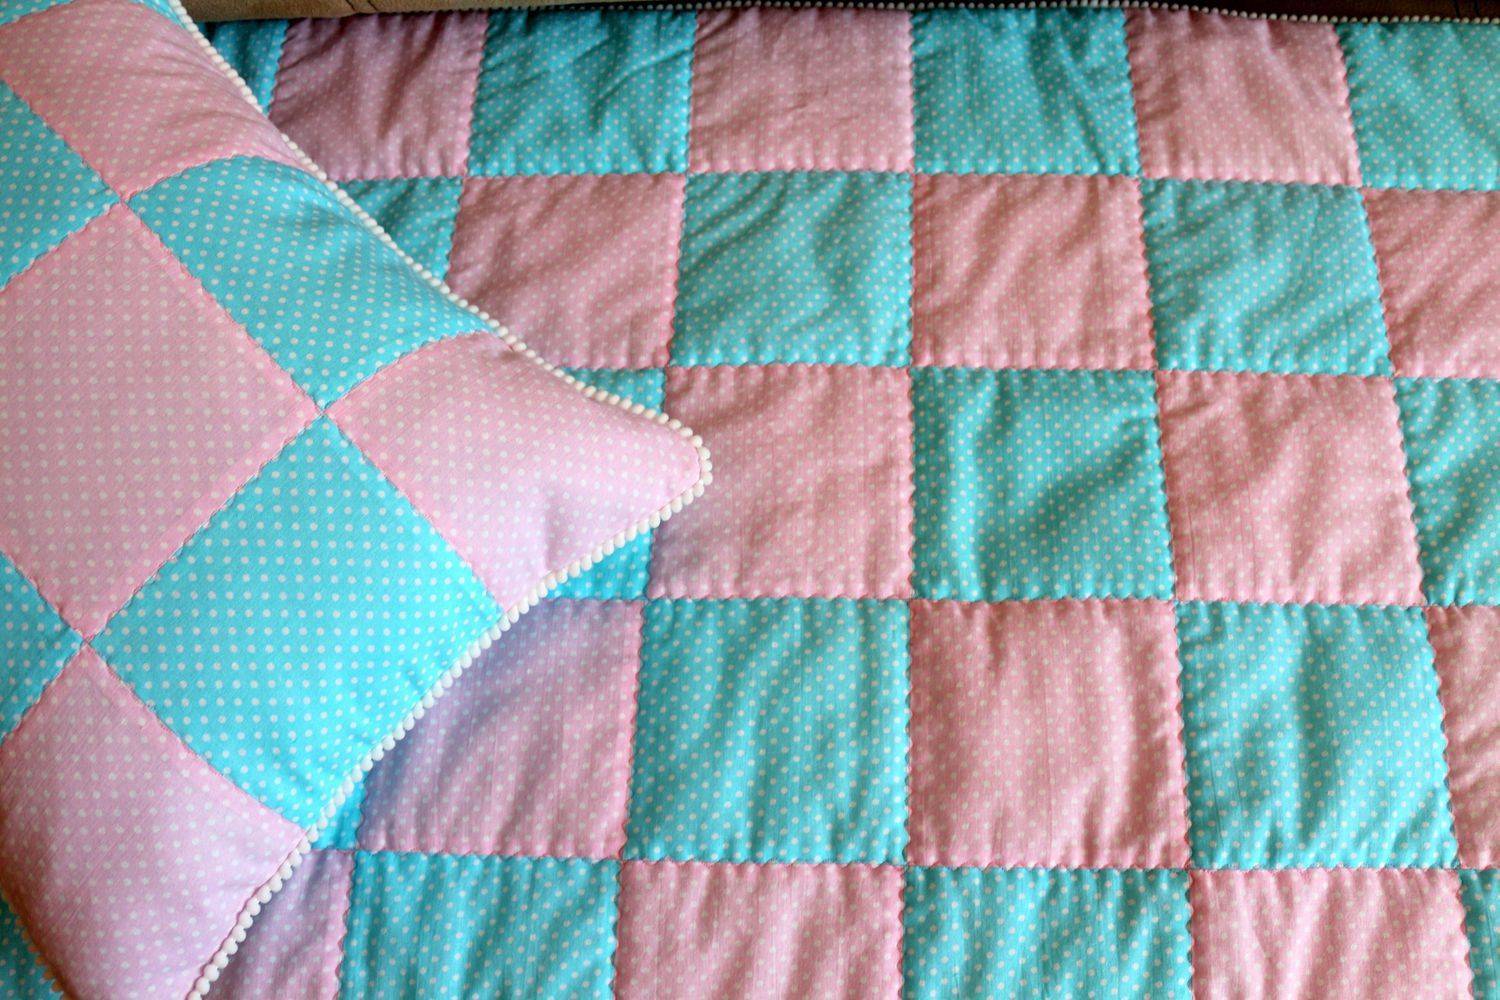 Лоскутное одеяло своими руками: схемы для начинающих, как сшить детское из квадратов, пошаговая инструкция, фото, видео, мастер-класс для новичков